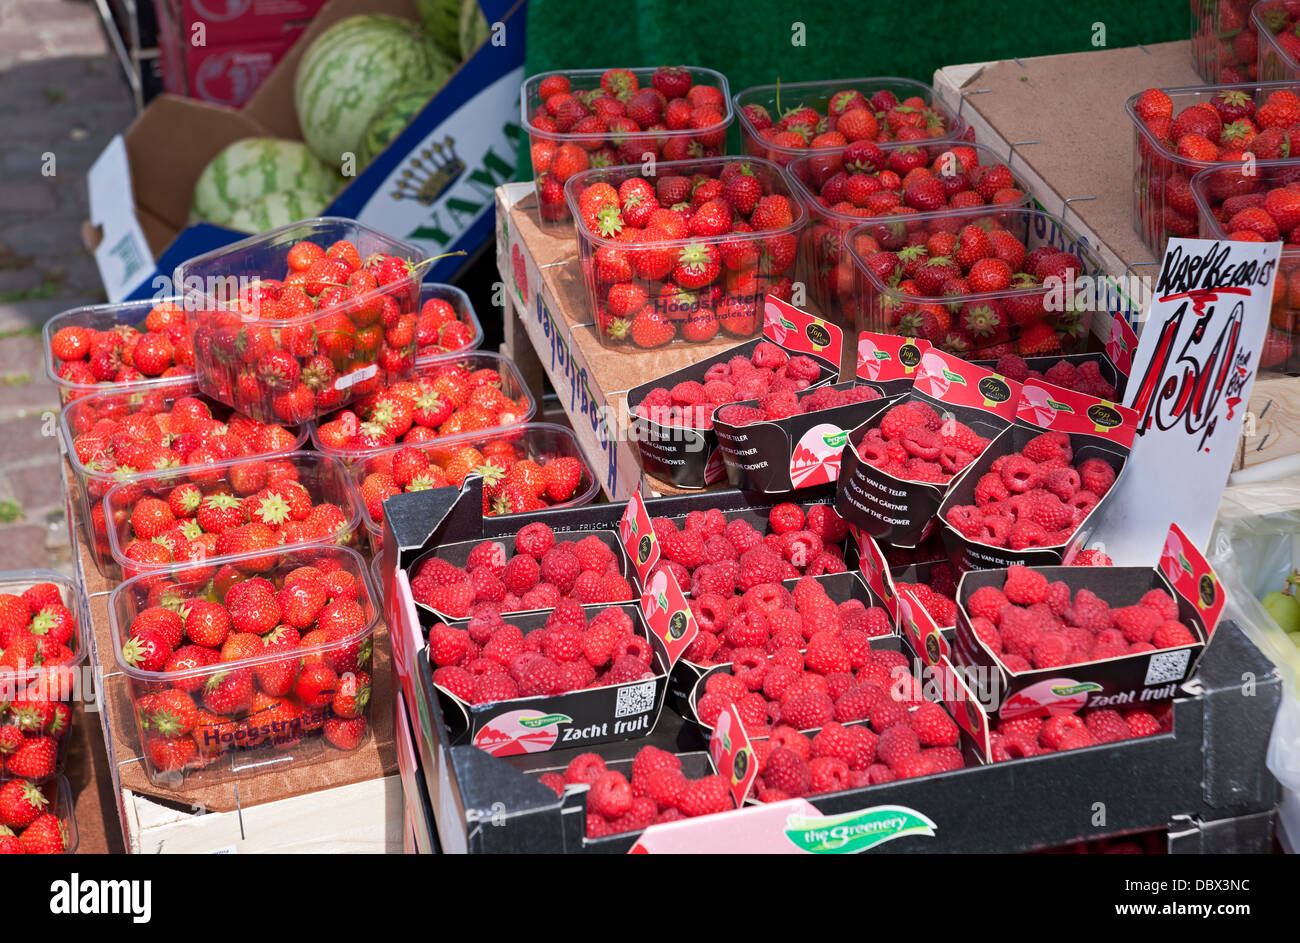 Punnets von frischen Erdbeeren und Himbeeren zum Verkauf auf dem Marktstand im Sommer York North Yorkshire England Großbritannien GB Großbritannien Stockfoto